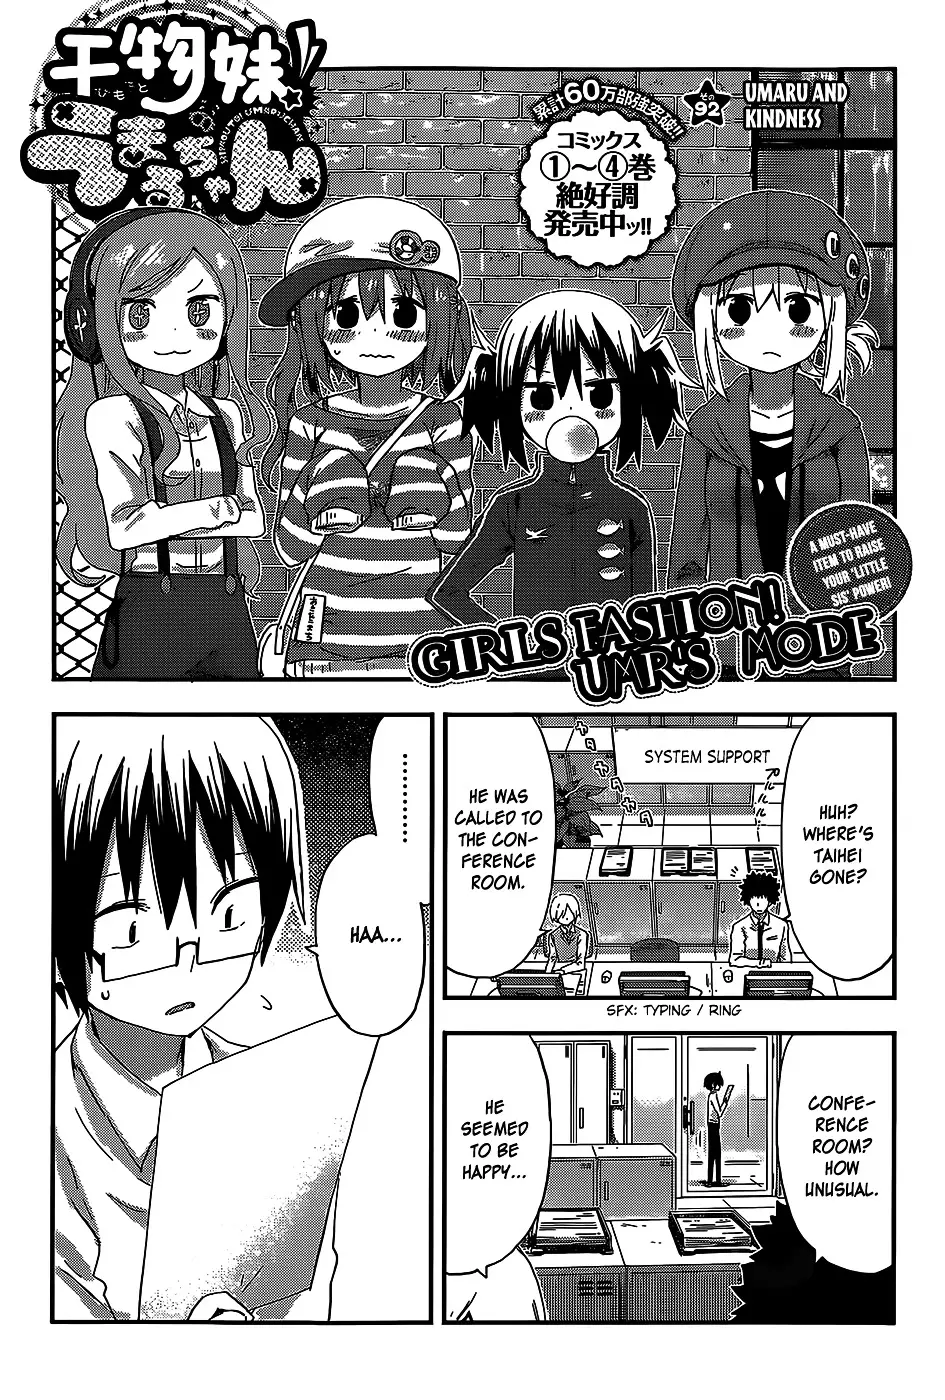 Himouto! Umaru-Chan - 92 page 1